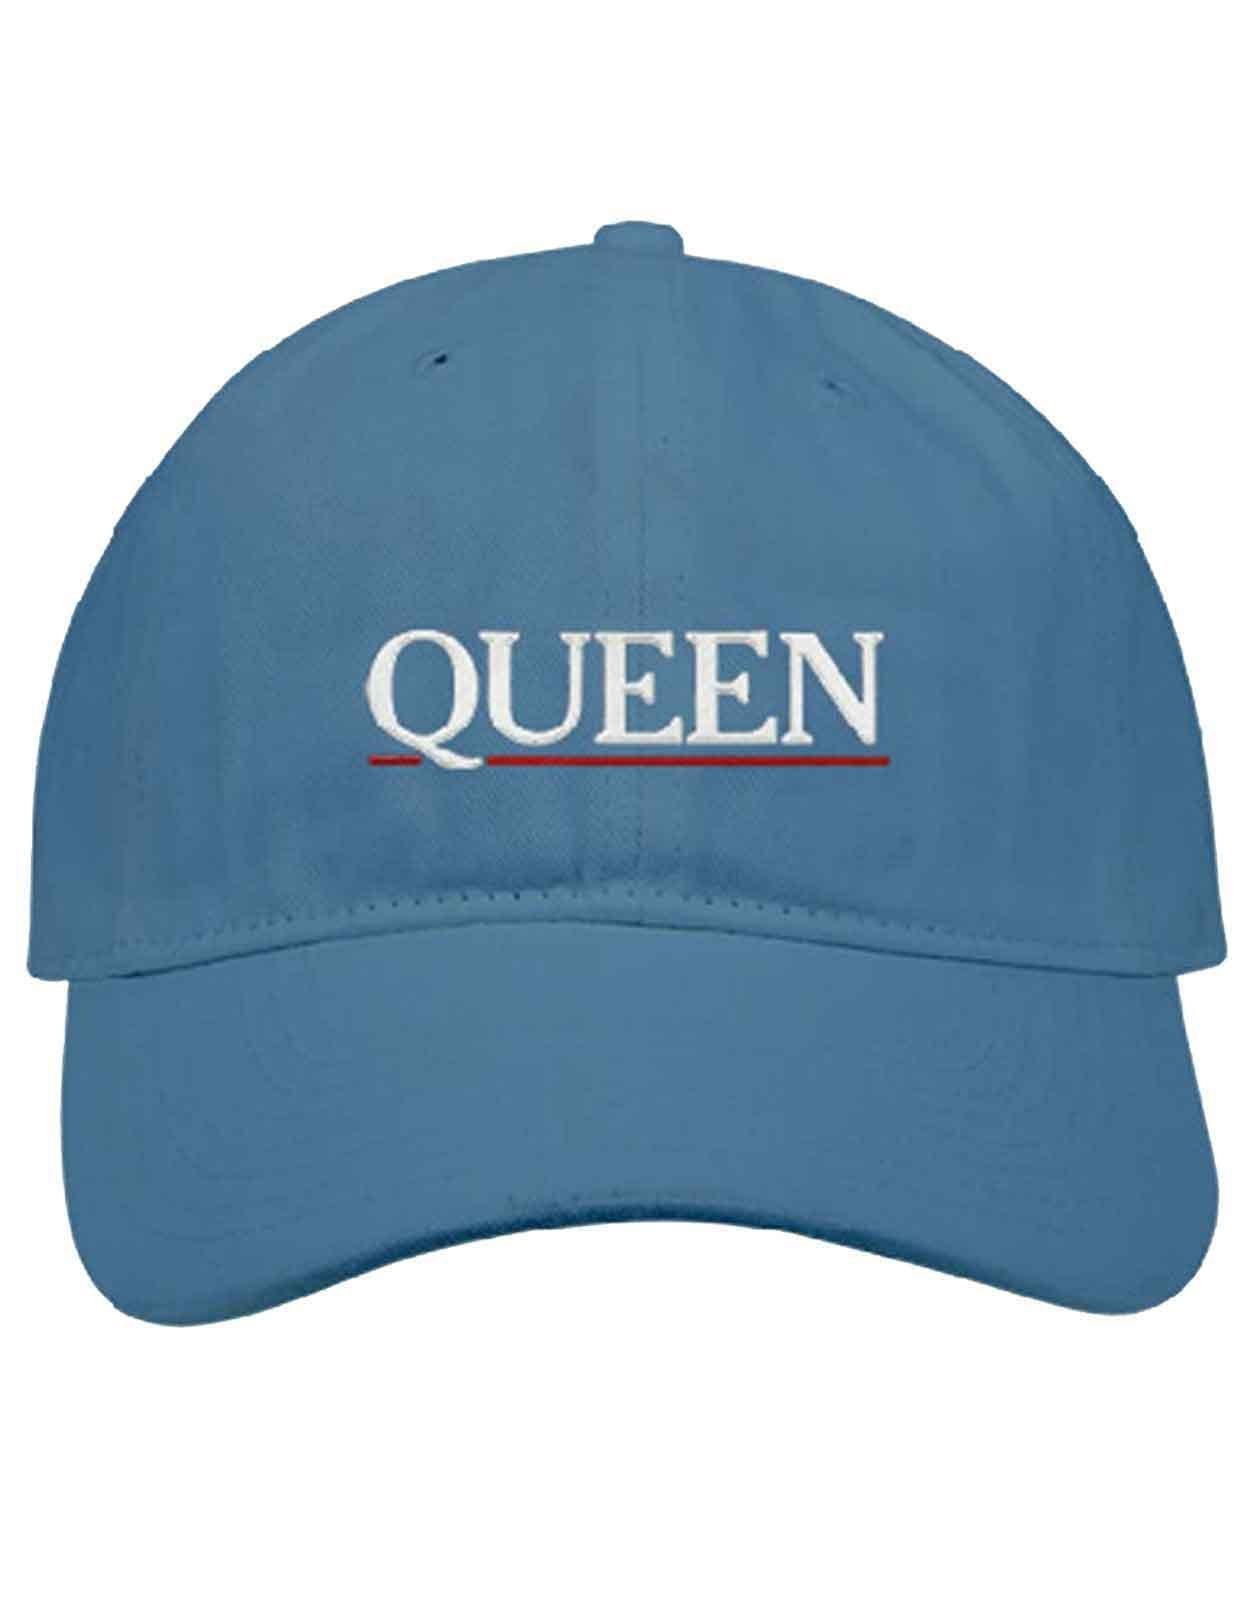 Бейсбольная кепка с логотипом и полоской с подчеркиванием Queen, синий винтажная промытая хлопковая бейсболка для мужчин и женщин мужская джинсовая бейсболка регулируемая бейсболка в стиле тракер низкий про